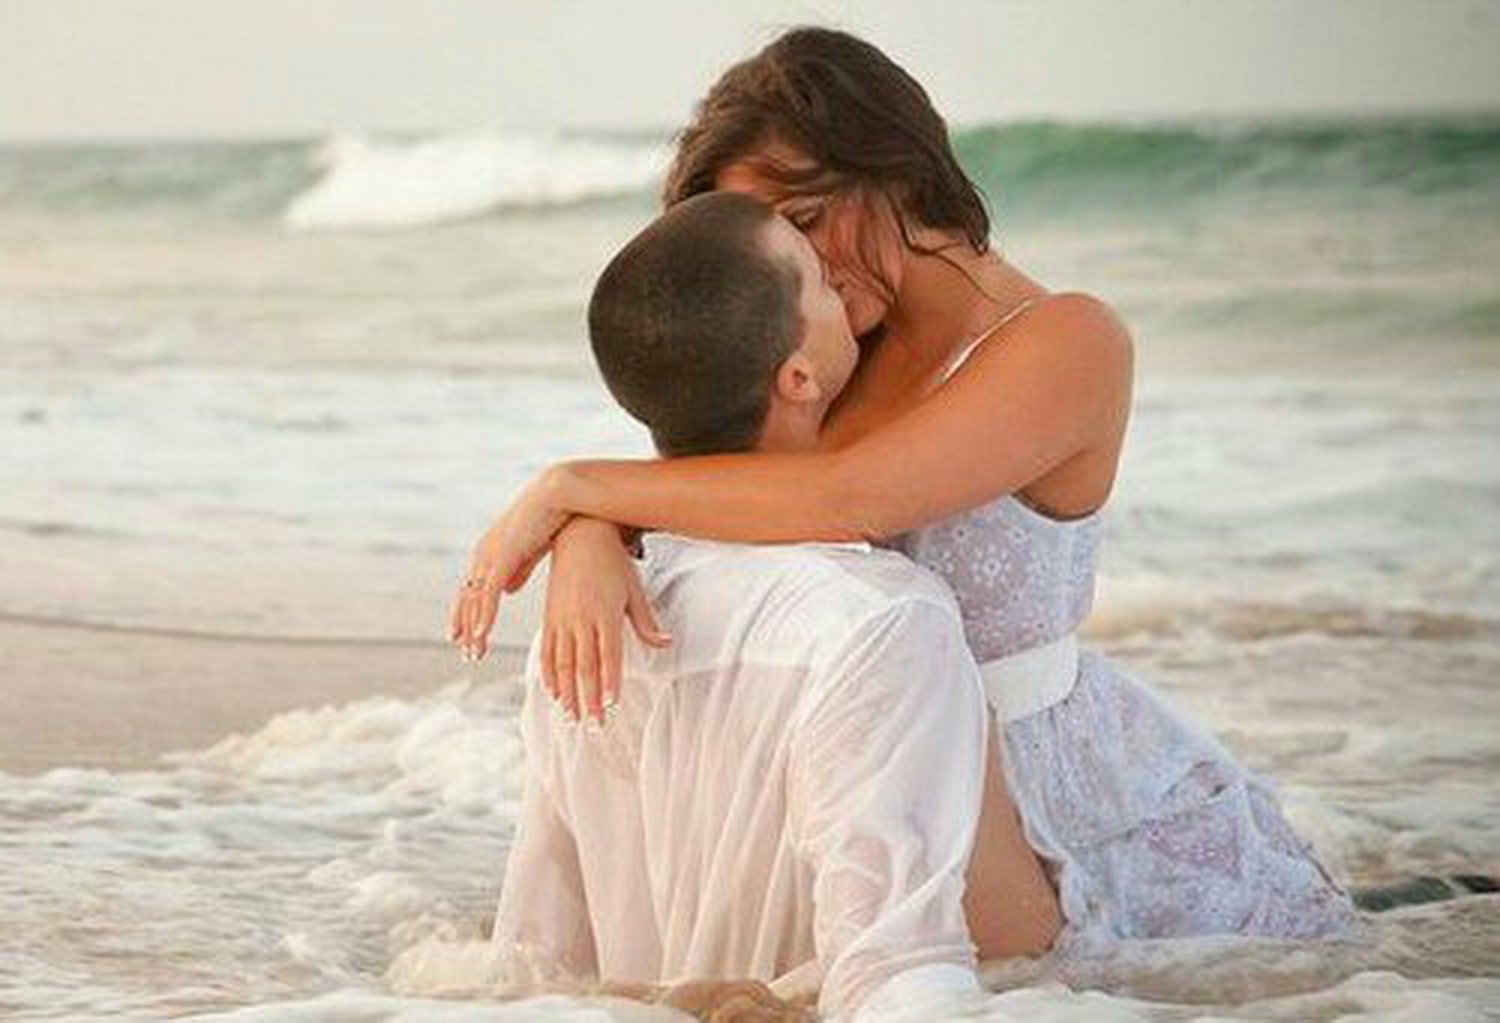 Мечты помогают жить. Влюбленные на море. Нежность пляж. Любовь и отношения картинки для карты желаний. Картинки для карты желаний любовь и брак.